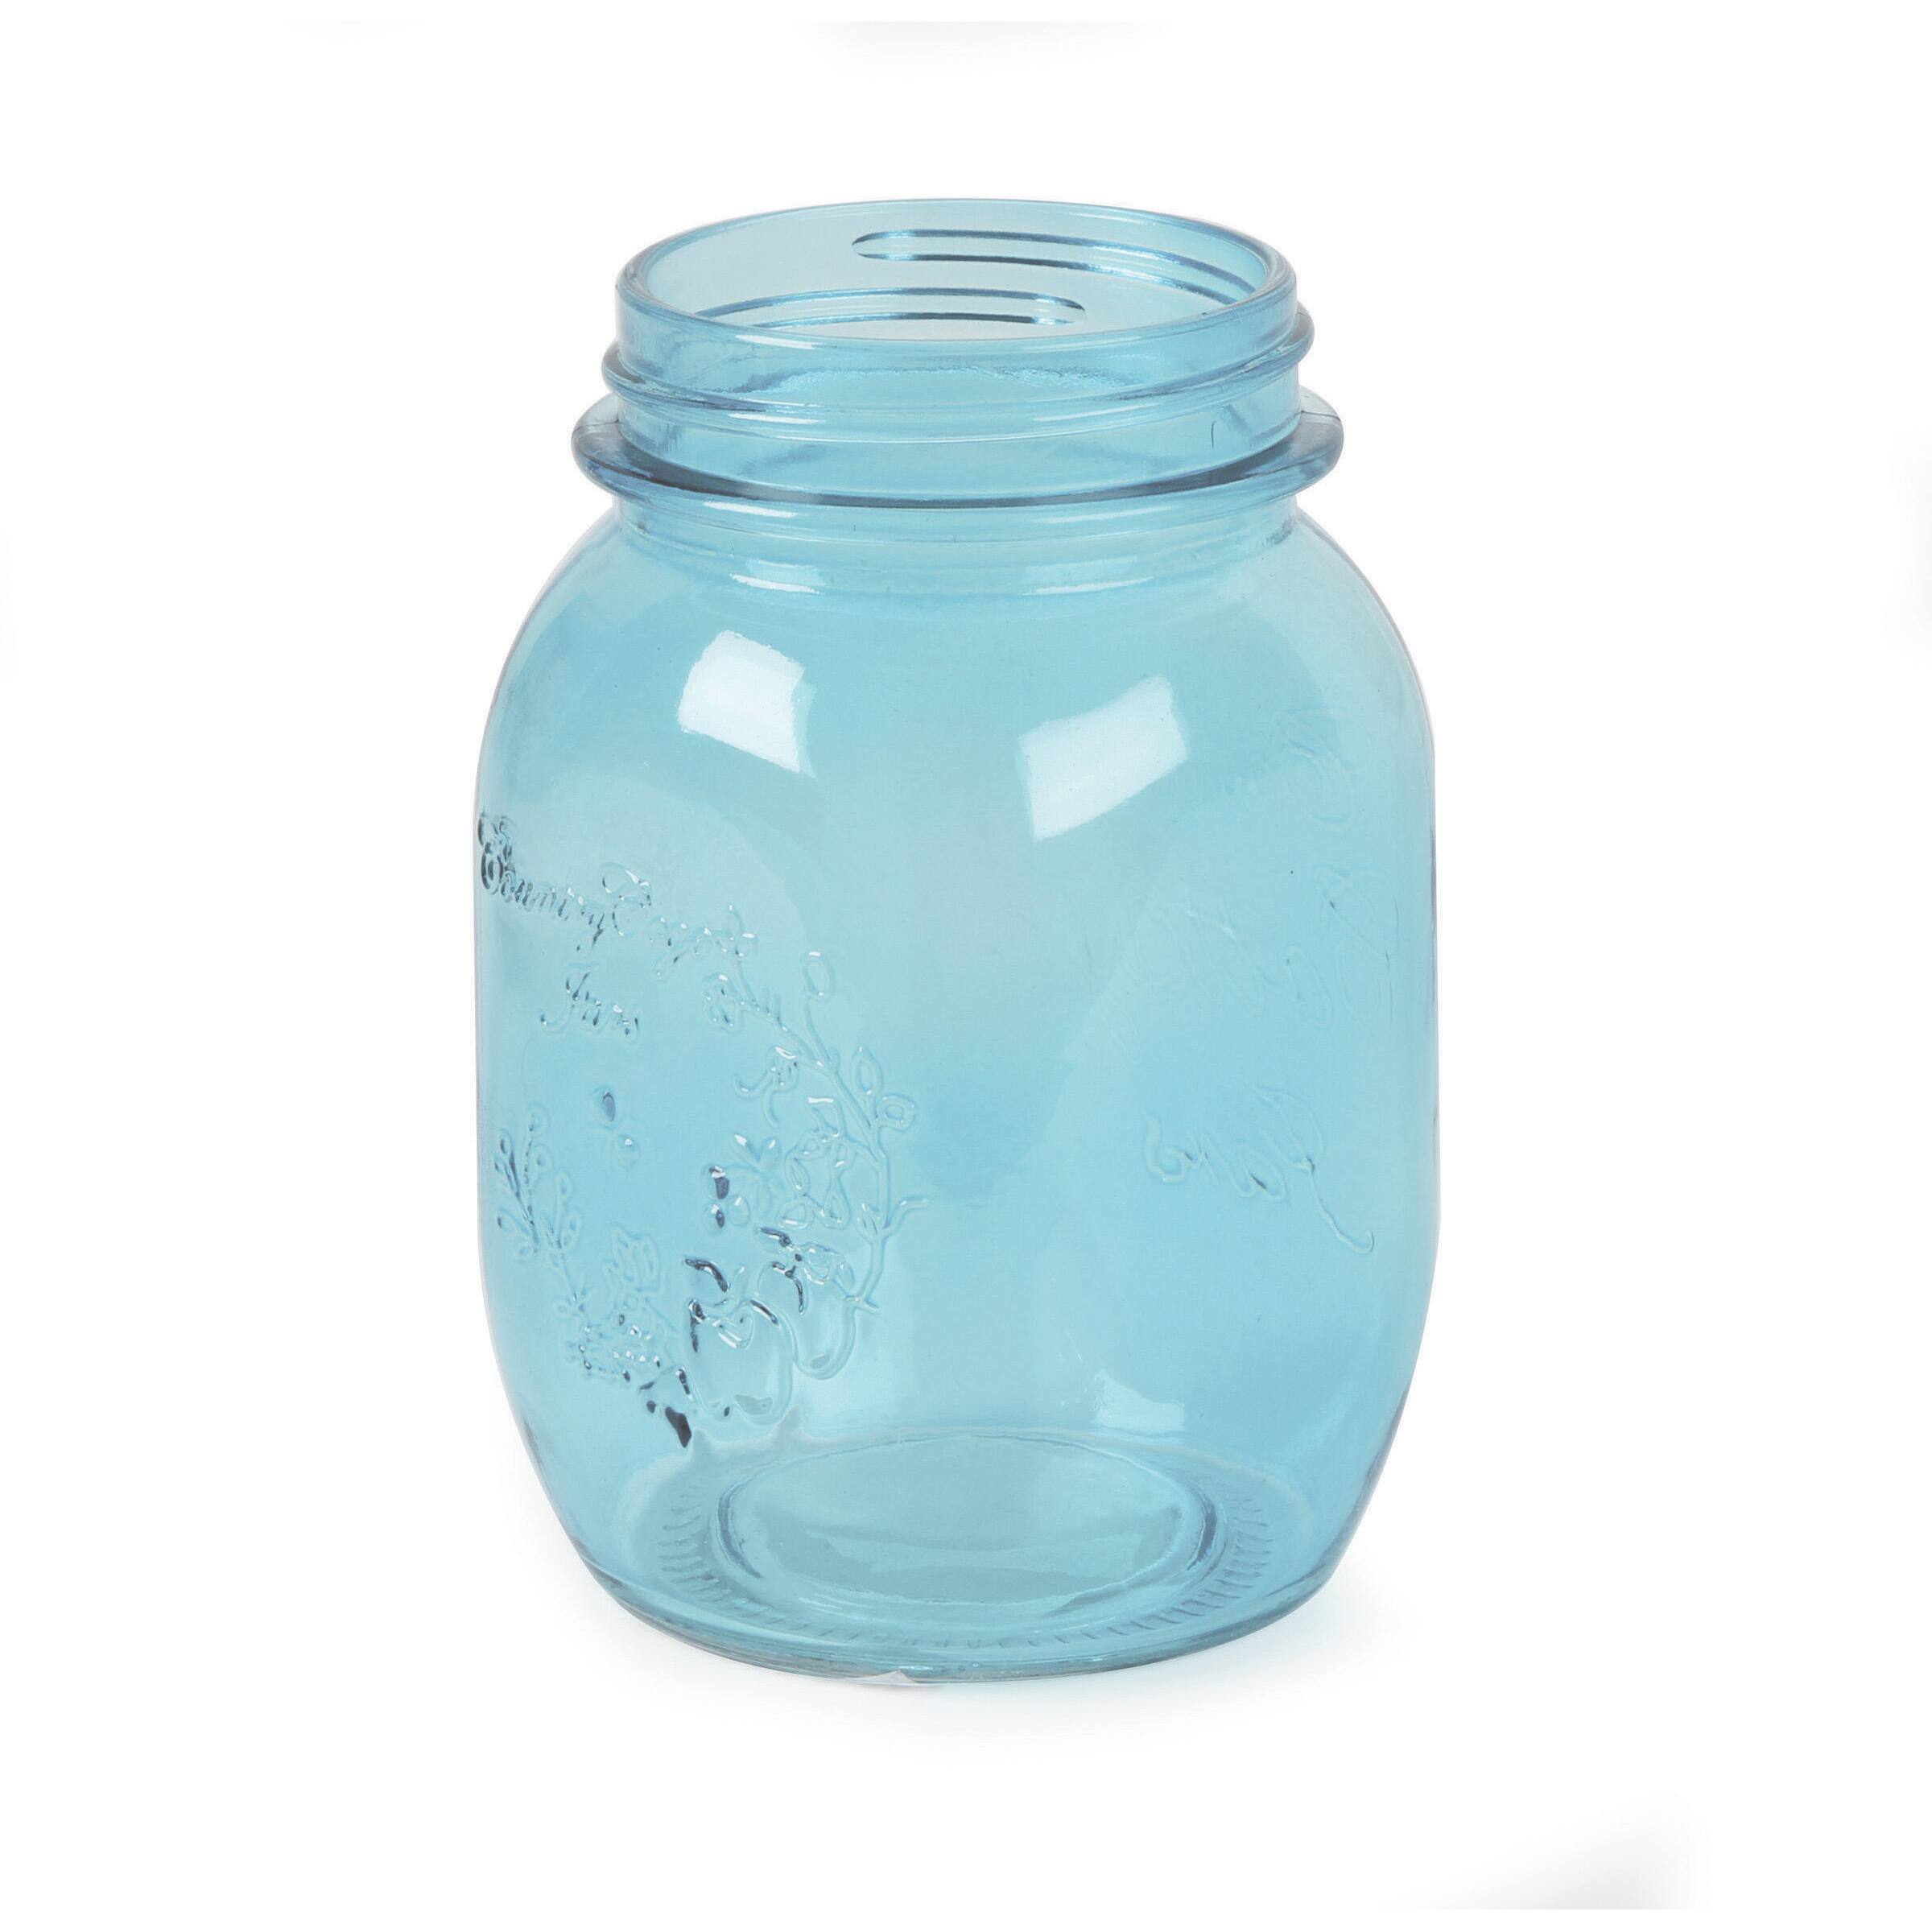 Get The Blue Decorative Mason Jar 16 Oz No Lid At Michaels